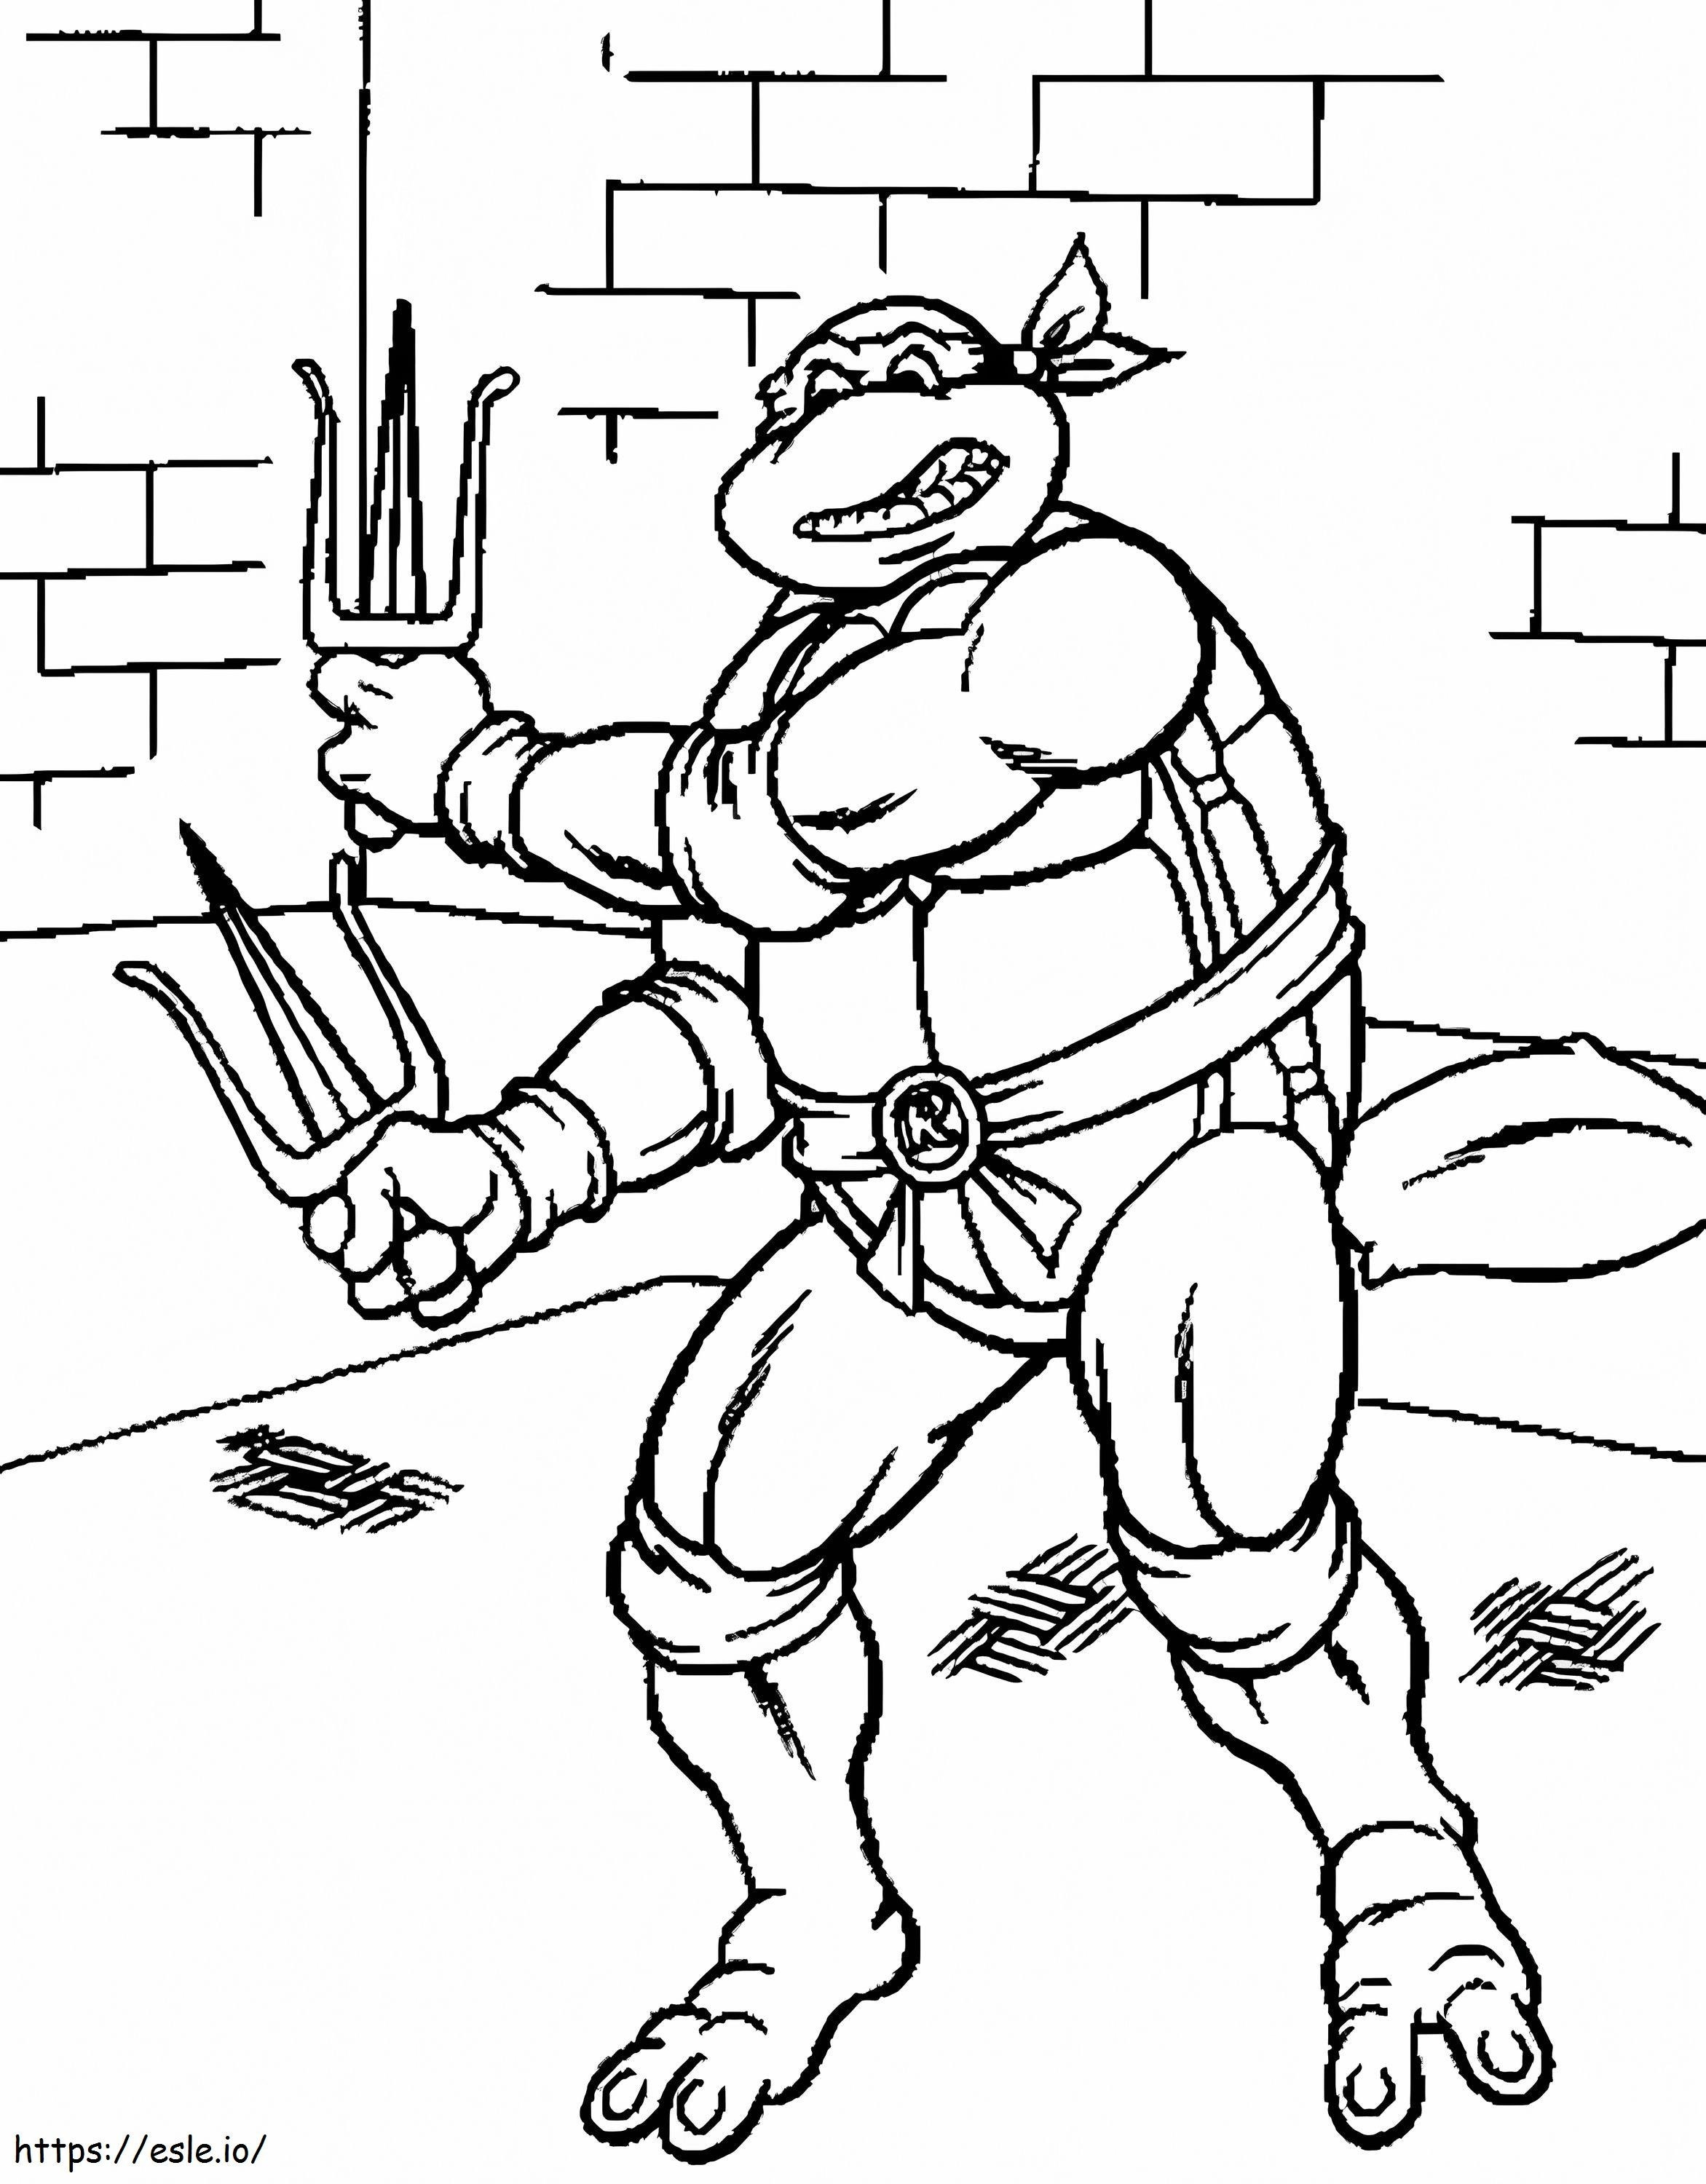 Ninja-Schildkröten-Zeichnung ausmalbilder